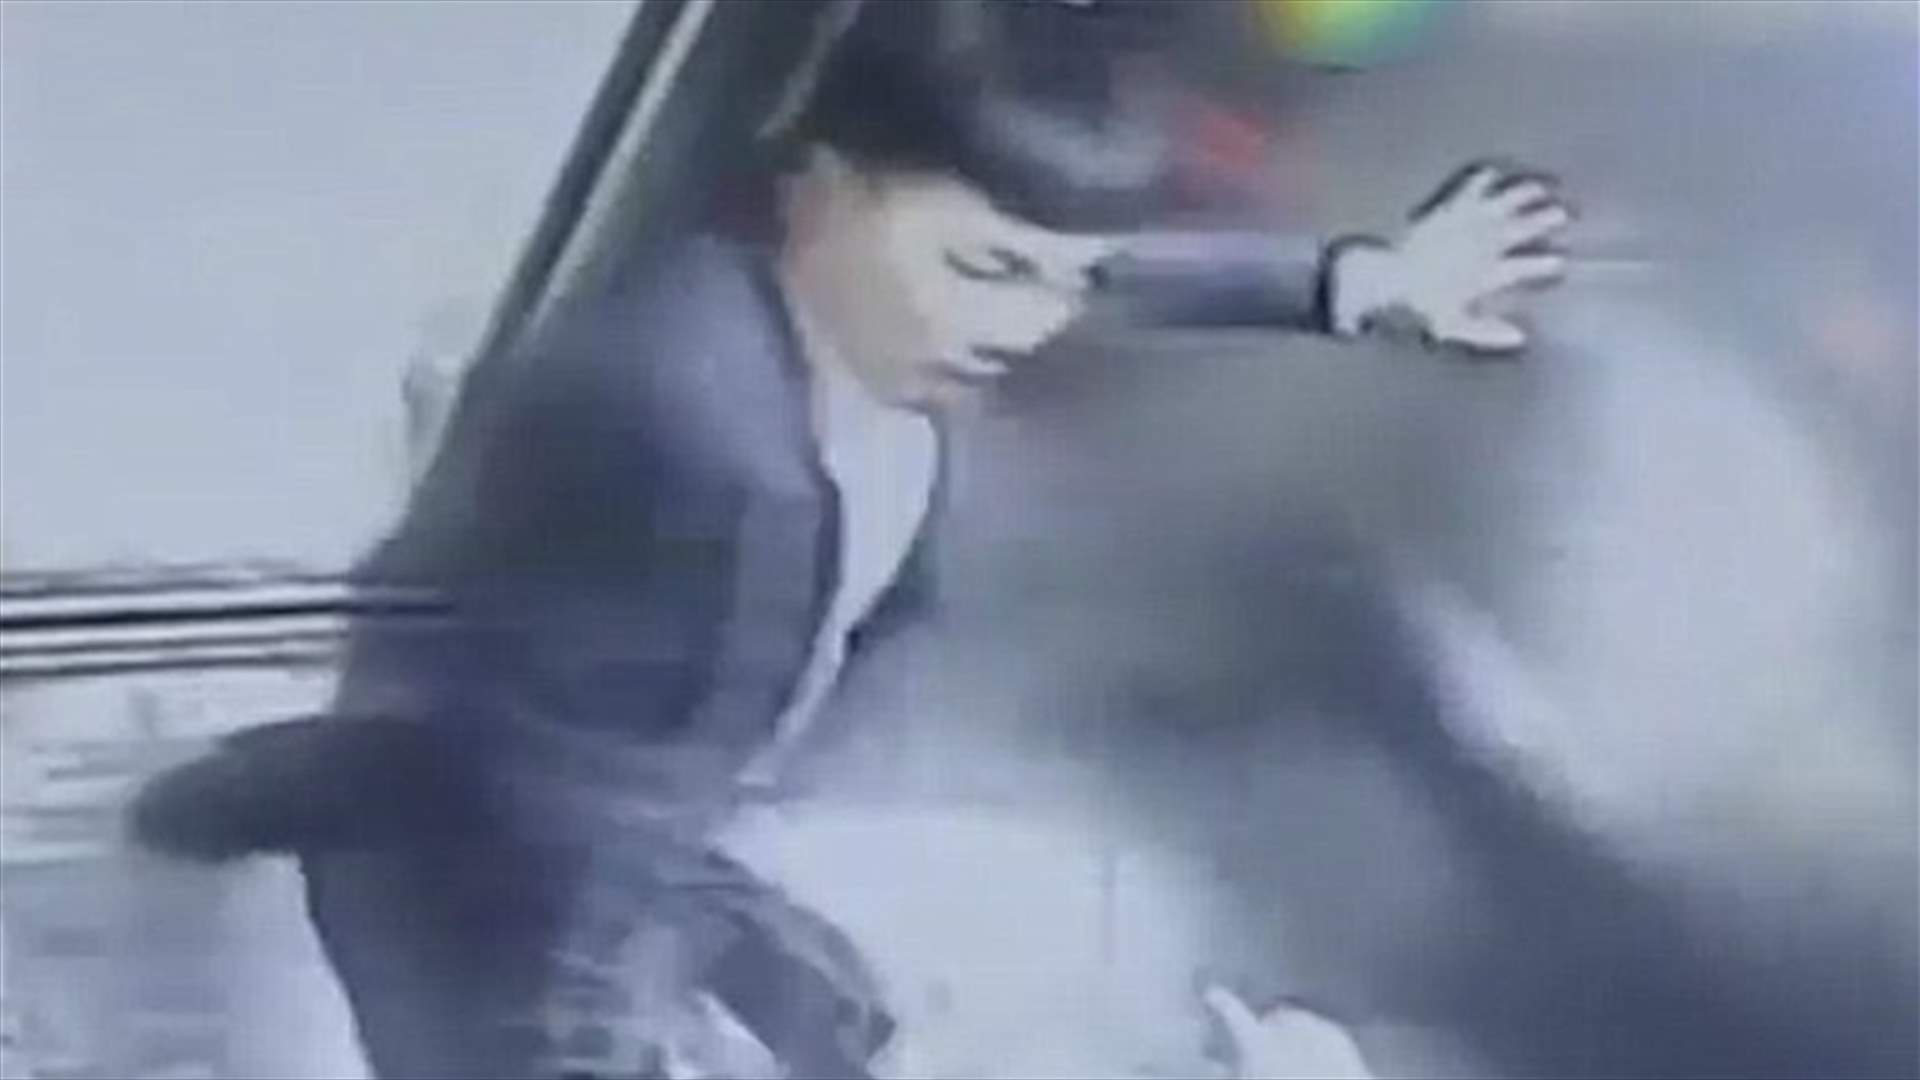 بالفيديو: طلبت منه عدم التدخين في المصعد... فانهال عليها بالضرب